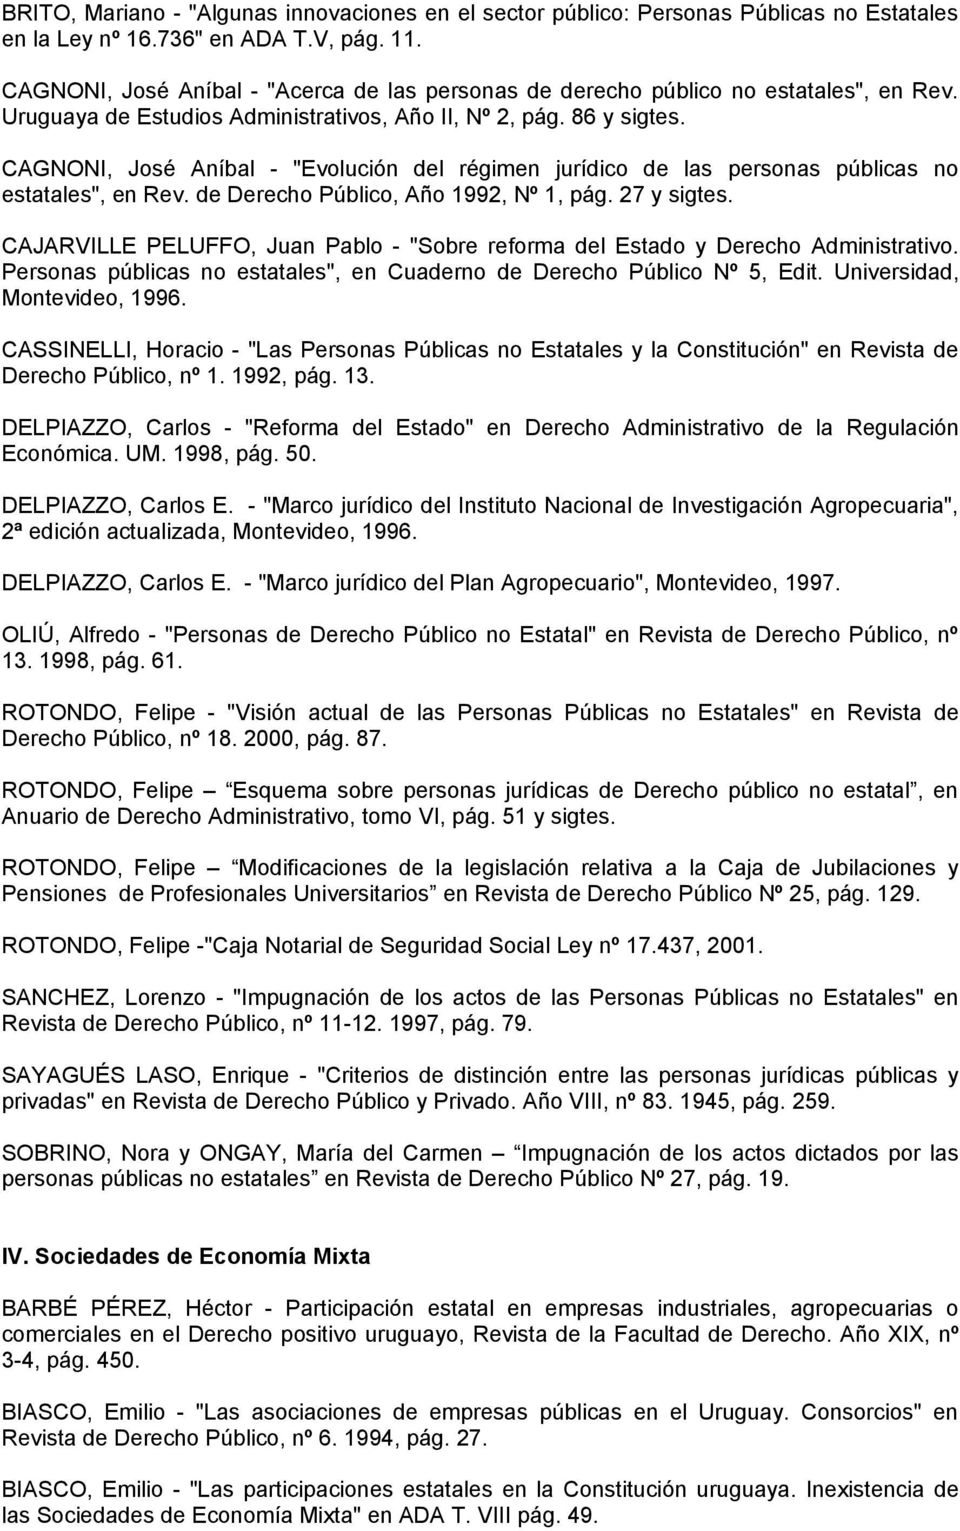 CAGNONI, José Aníbal - "Evolución del régimen jurídico de las personas públicas no estatales", en Rev. de Derecho Público, Año 1992, Nº 1, pág. 27 y sigtes.